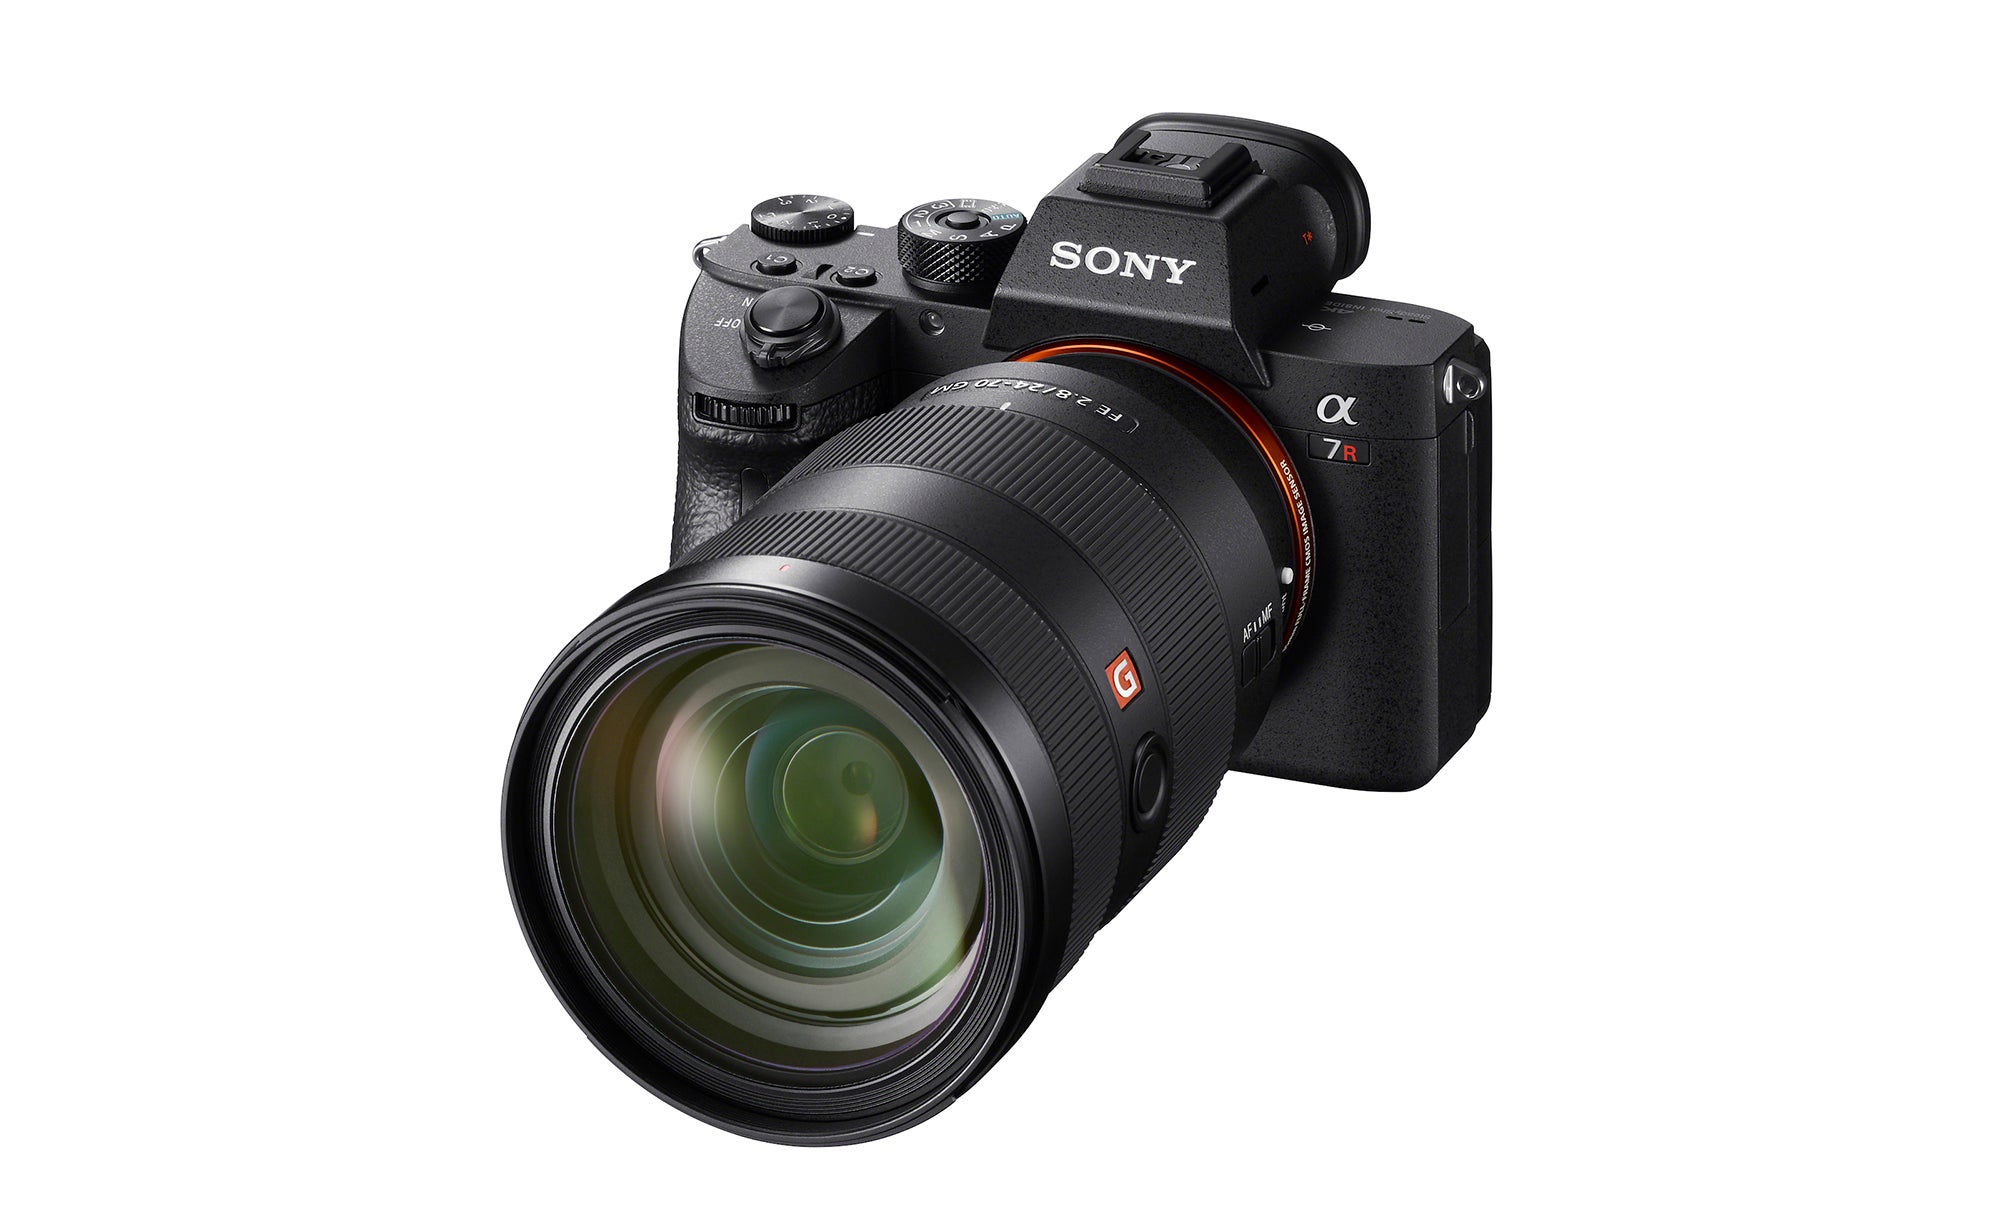  Sony Alpha 7S III Full-frame Interchangeable Lens